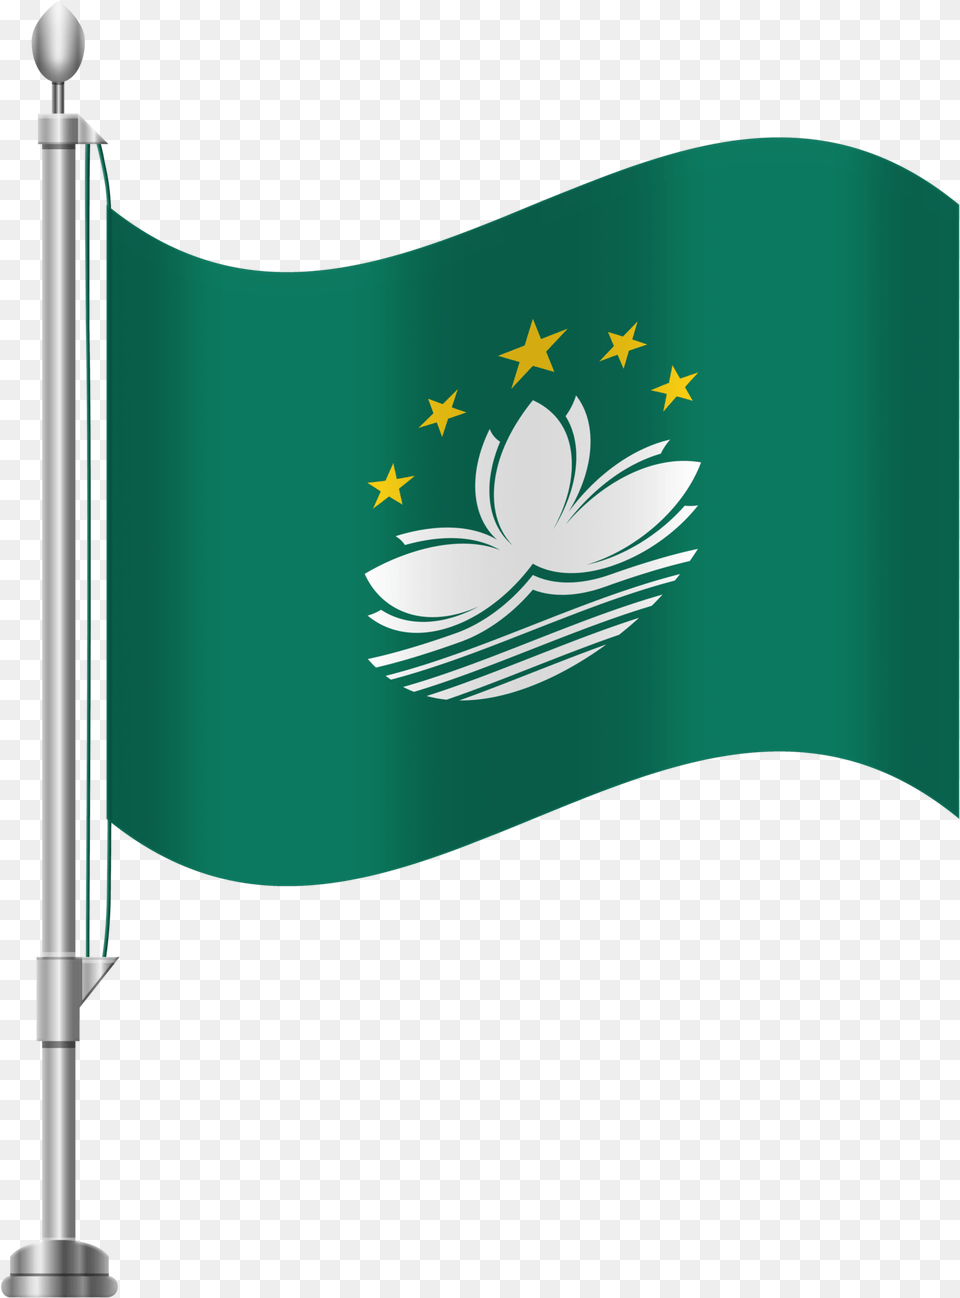 Saudi Arabia Flag Free Transparent Png